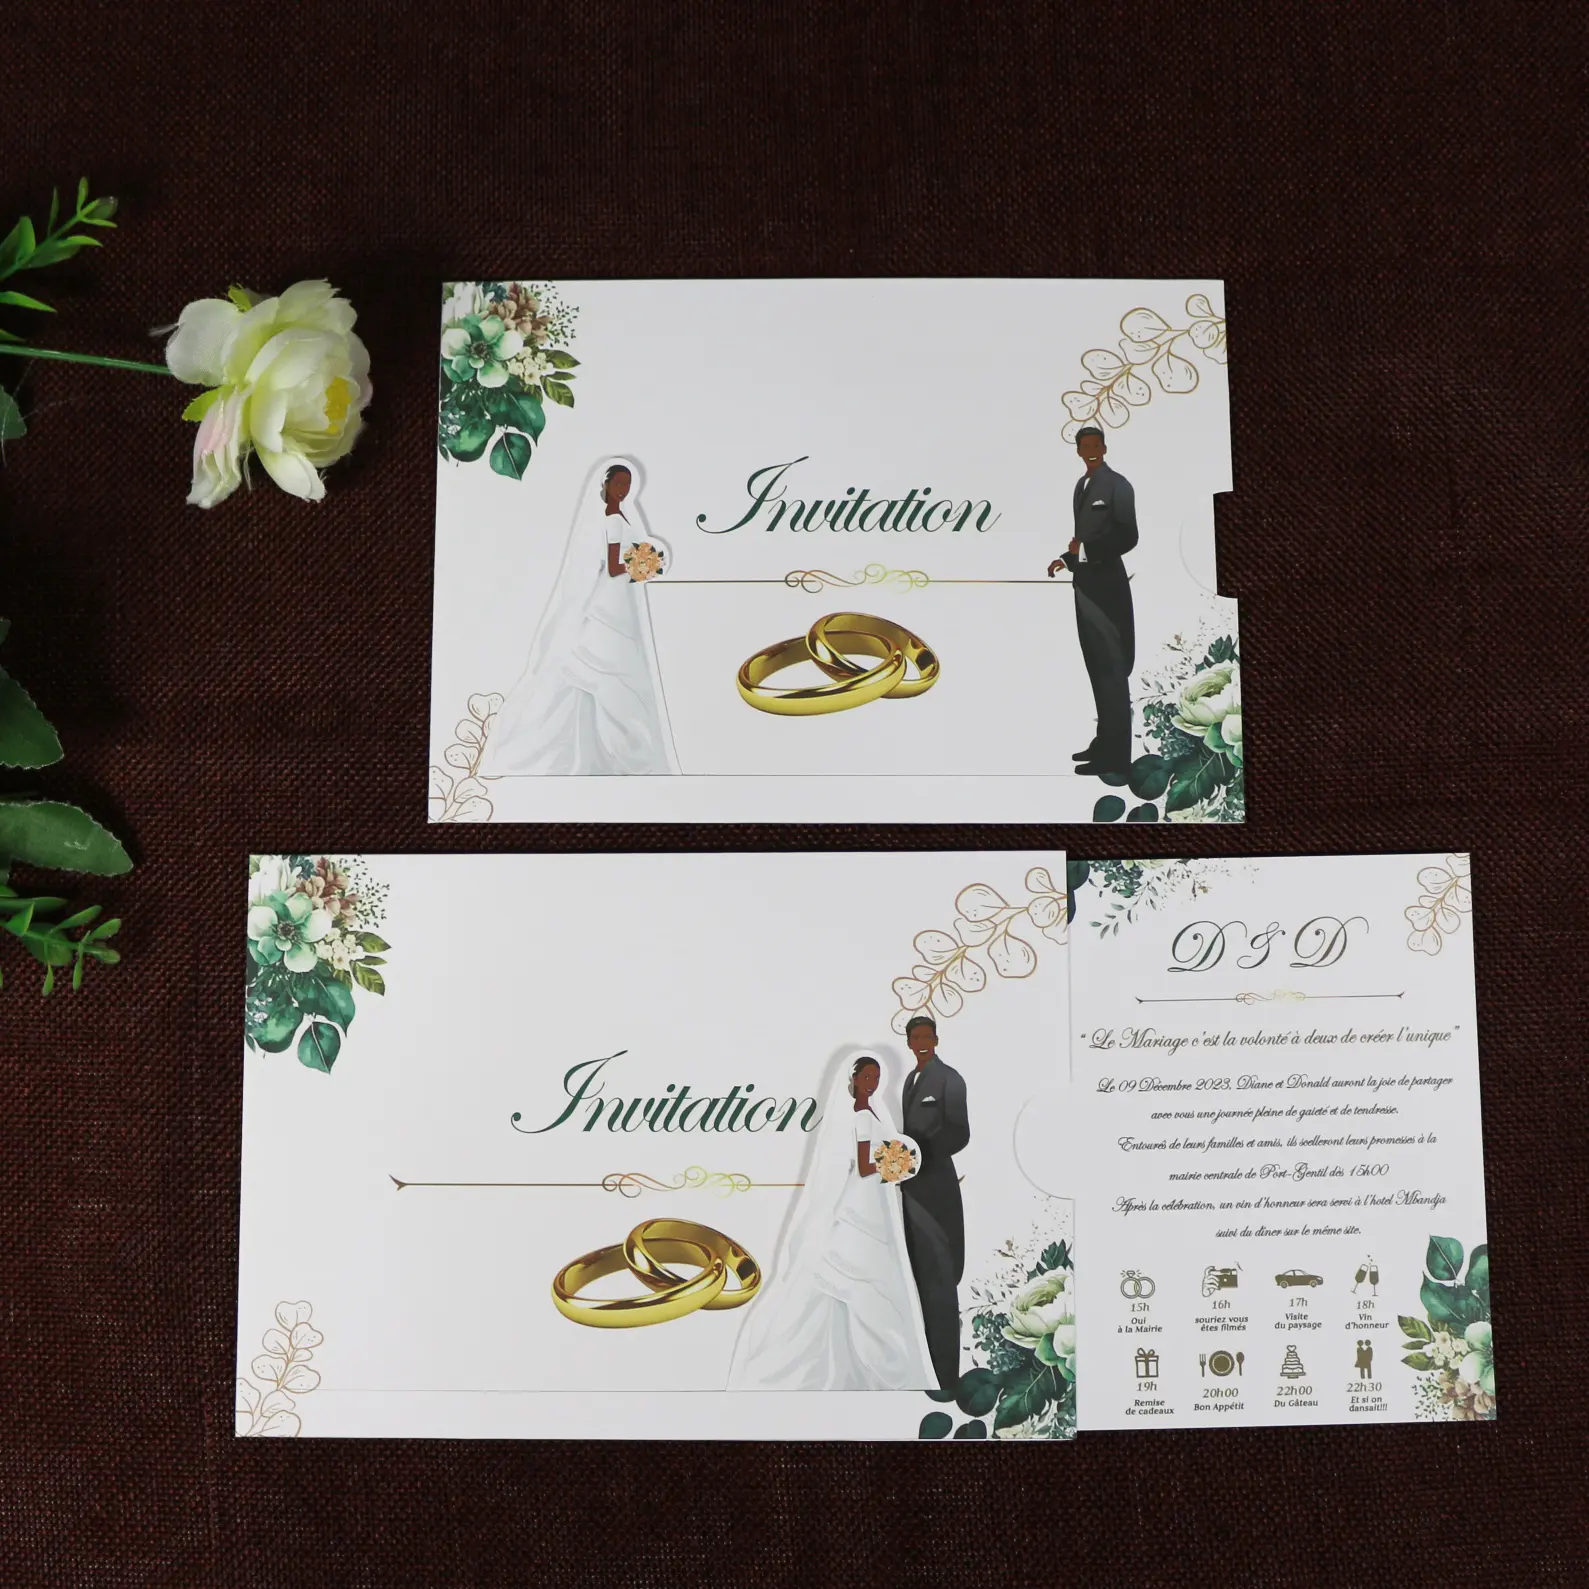 Kartu undangan pernikahan tamil kreatif de carte de mariage dengan percetakan khusus